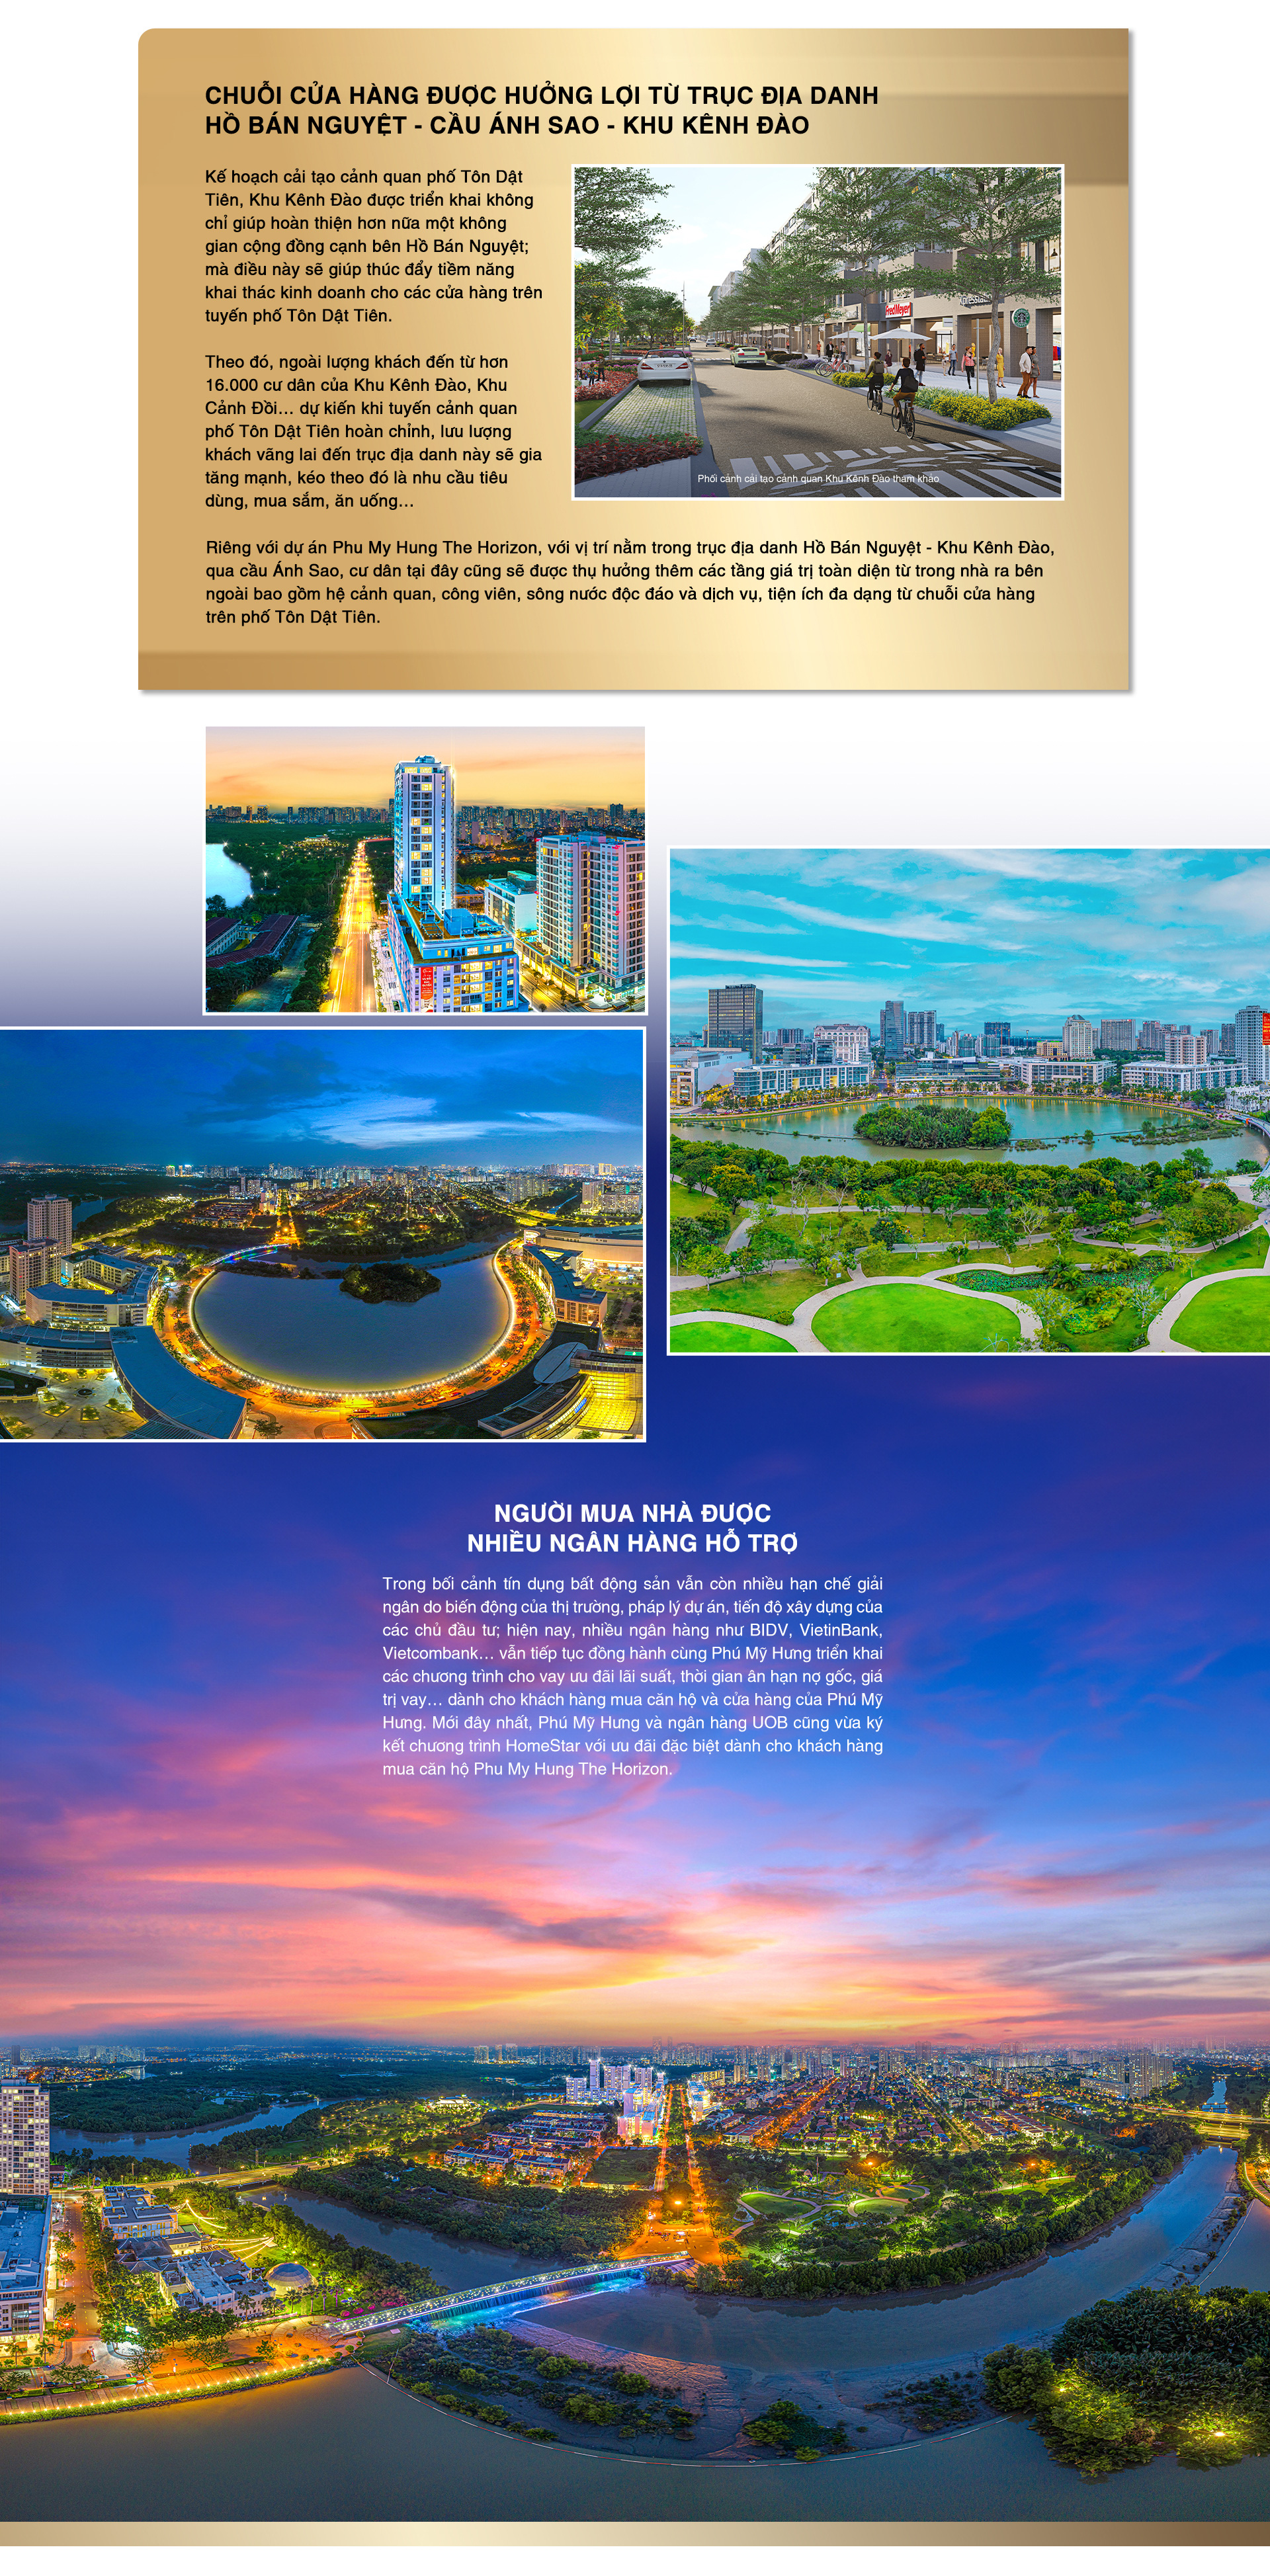 Bất động sản Phú Mỹ Hưng sắp đón sóng tăng trưởng từ loạt cú hích hạ tầng dịch vụ đô thị - Ảnh 11.